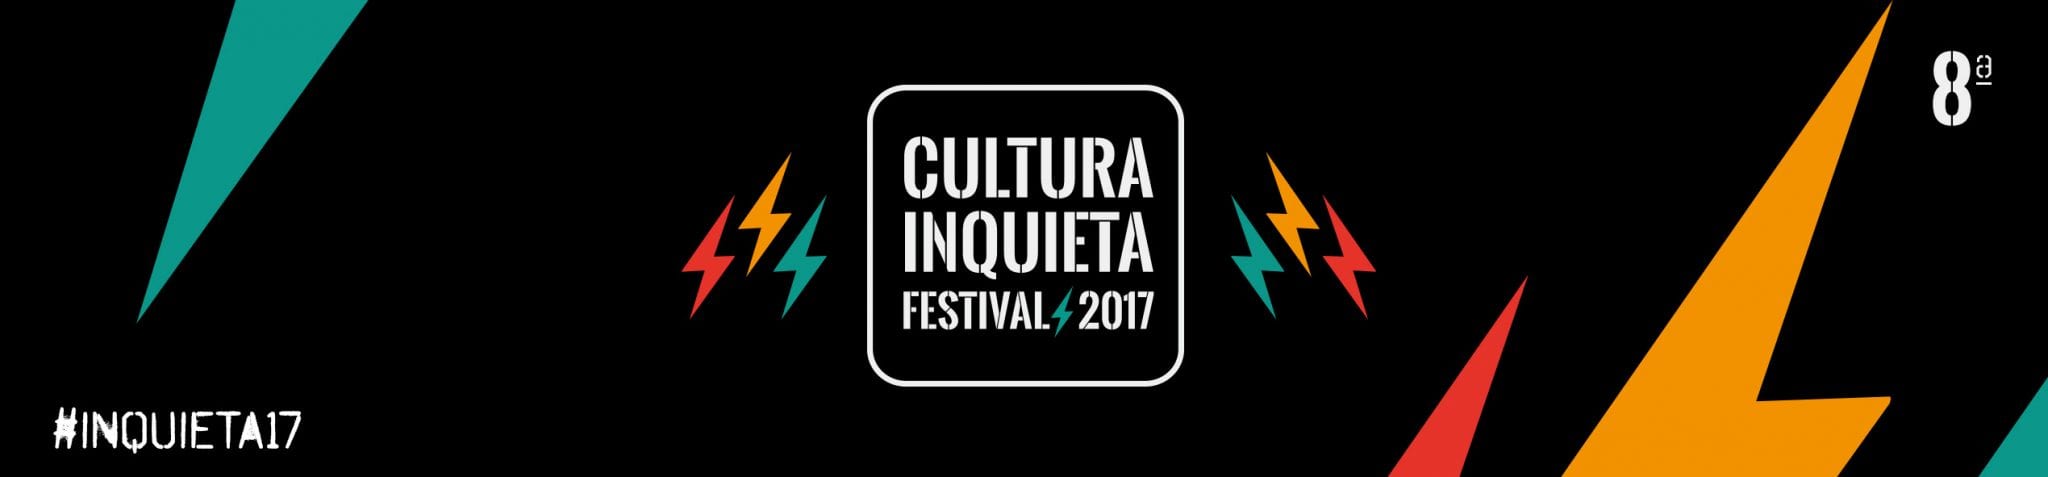 Revólver abrirá el Festival Cultura Inquieta el 22 de junio